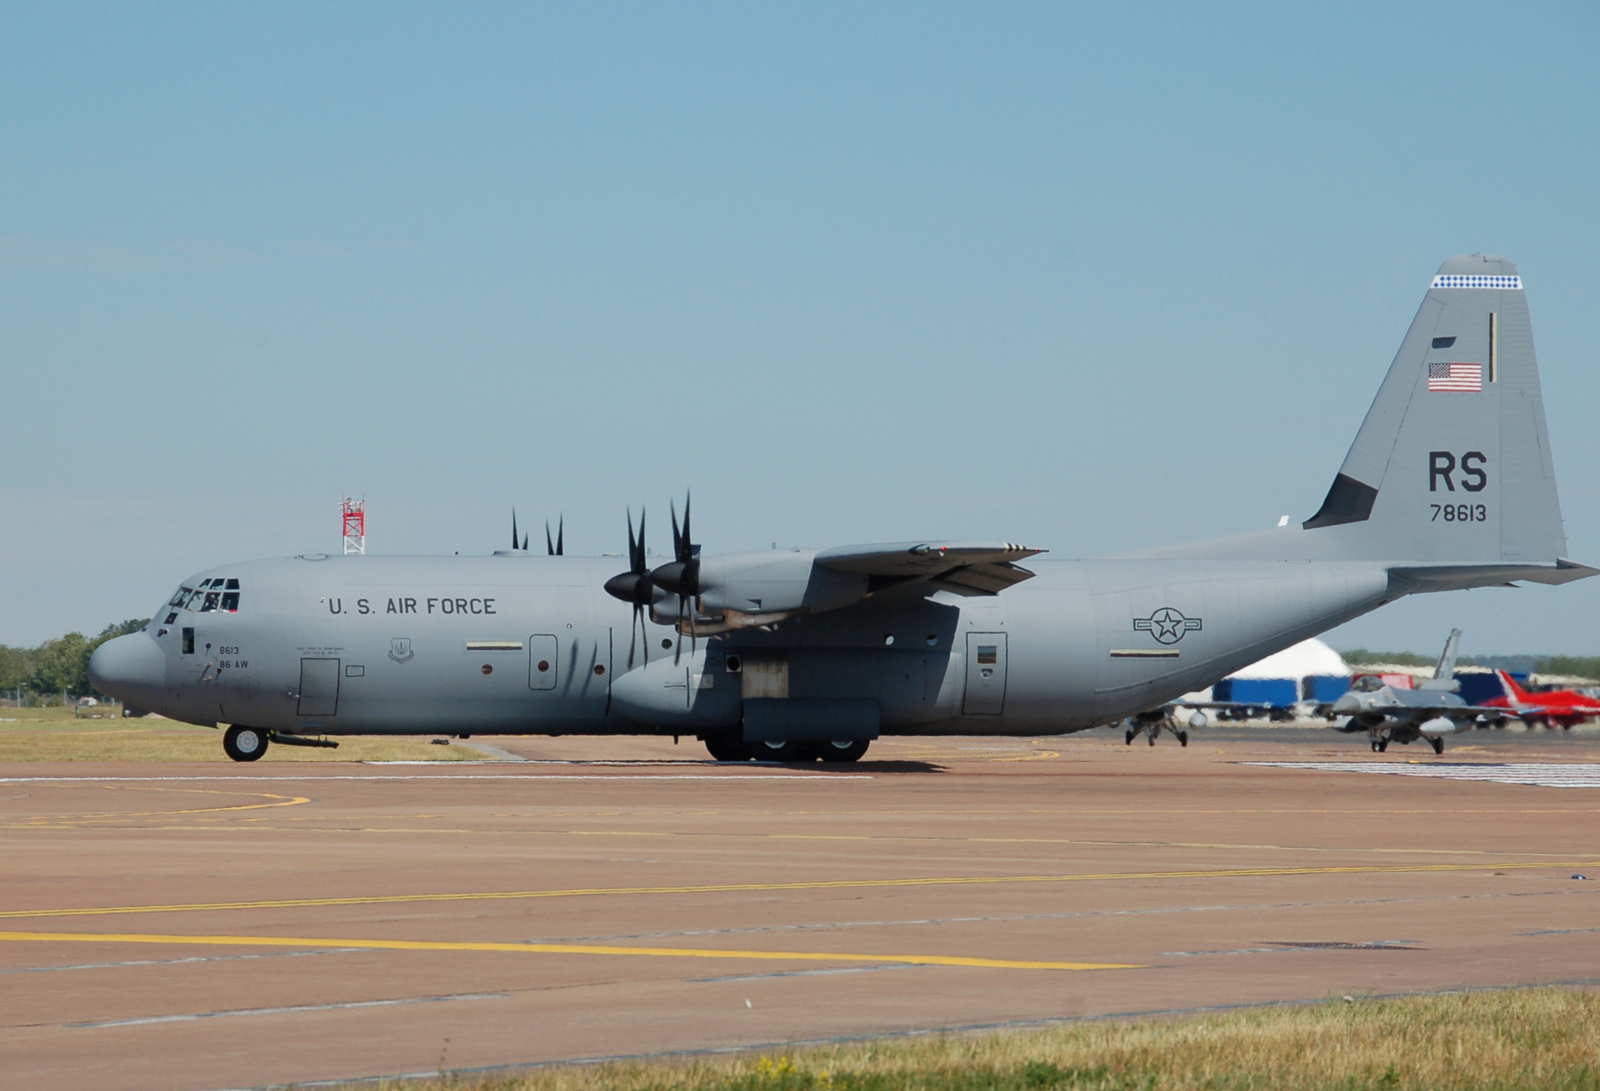 USAF_C-130J_Super_Hercules_at_RIAT_2010_arp.jpg